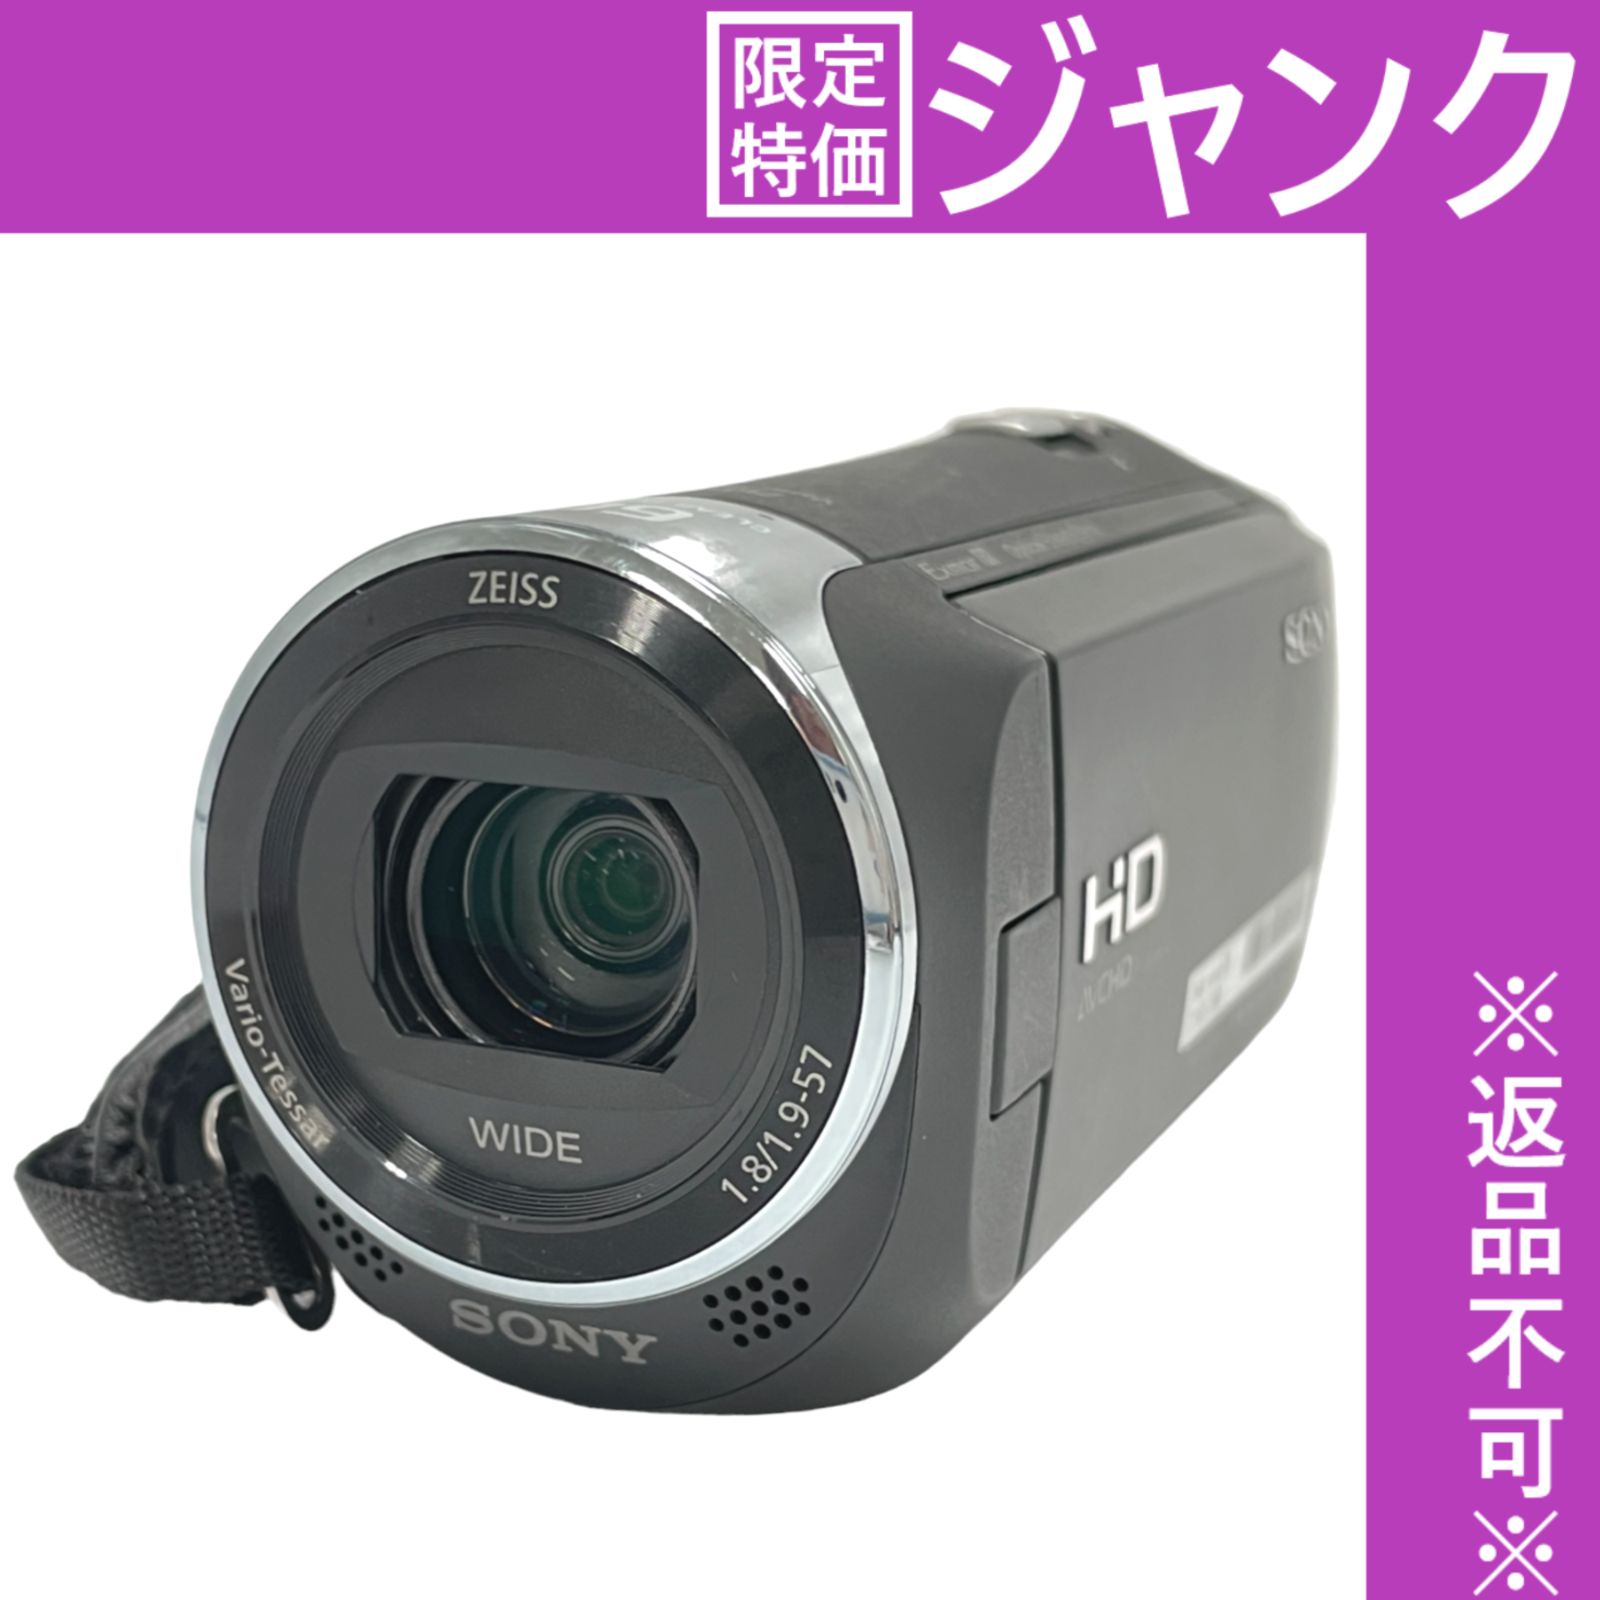 ジャンク】SONY ソニー ビデオカメラ HDR-CX470 ブラック - レンティオ